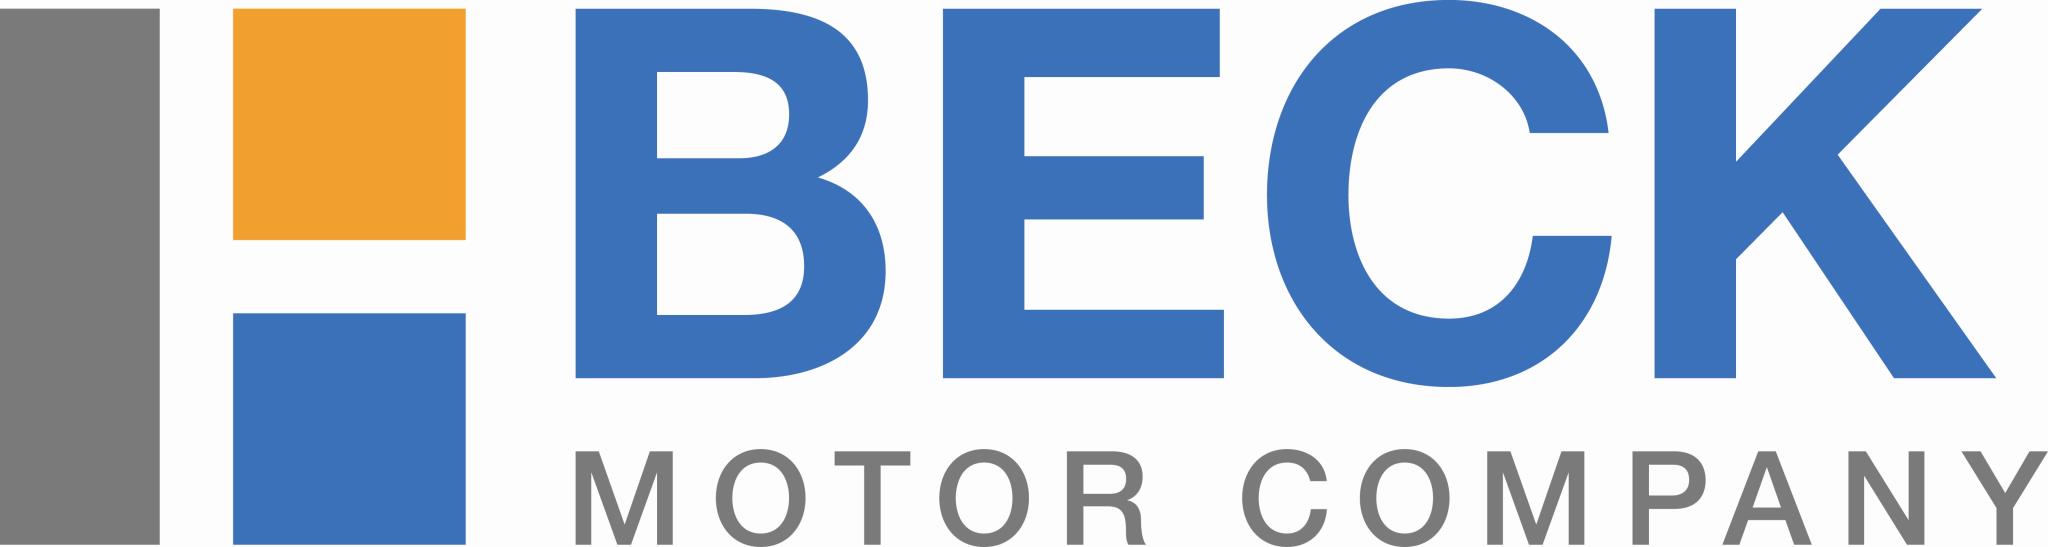 Beck Motor Company Logo